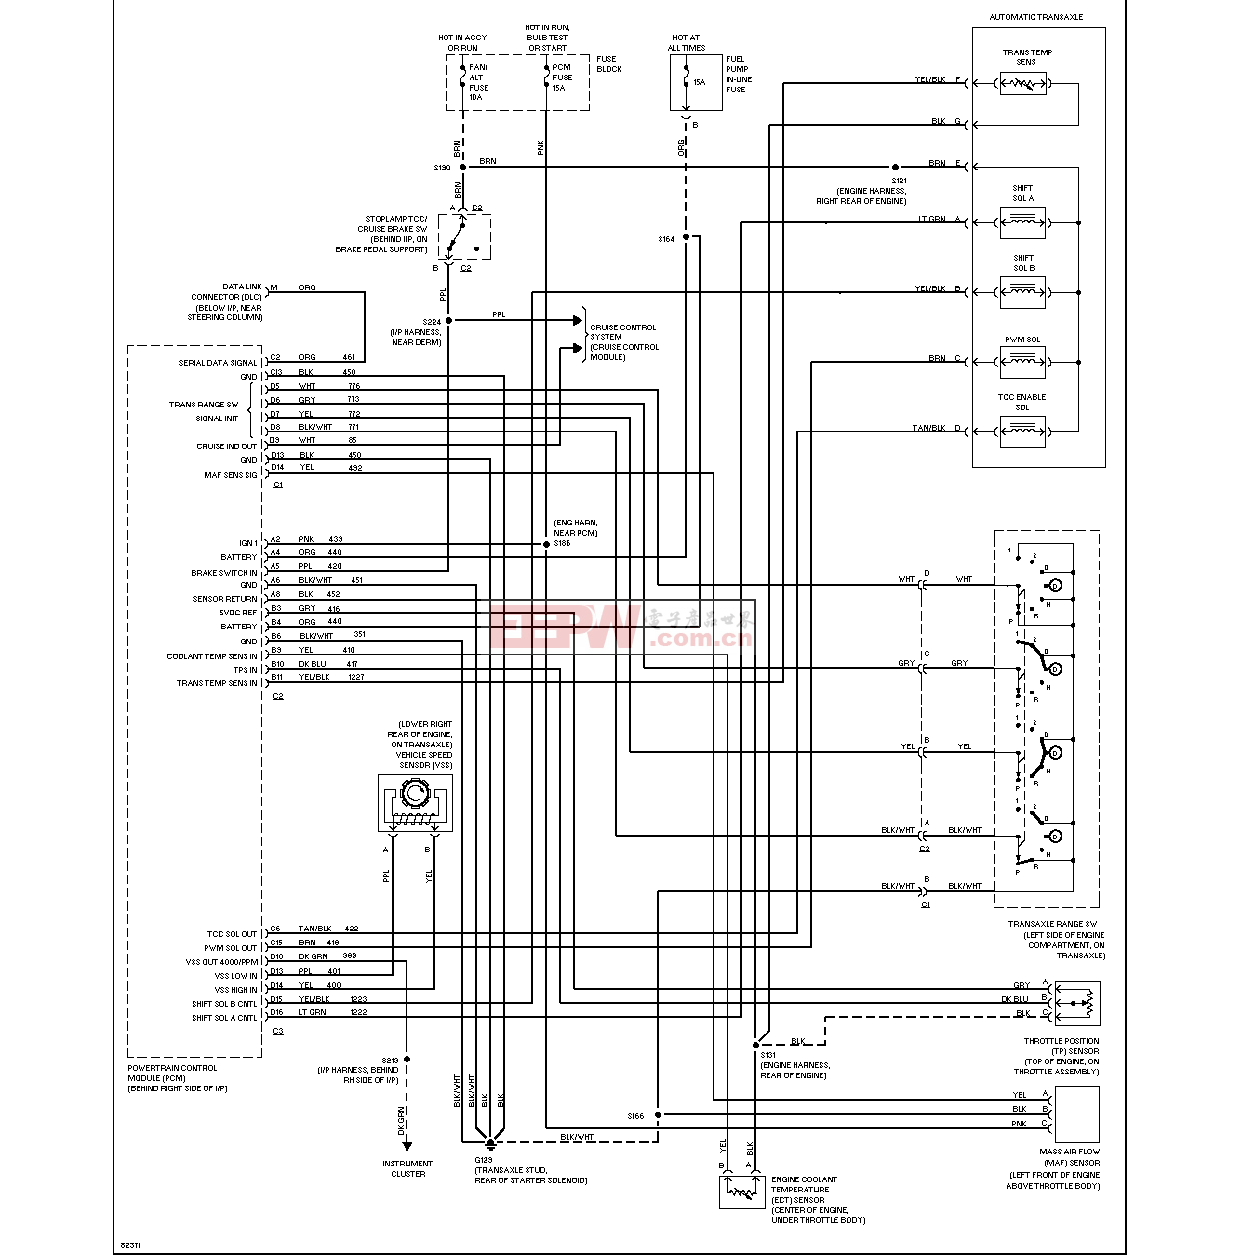 變速箱電路圖（3.1l,vinm)